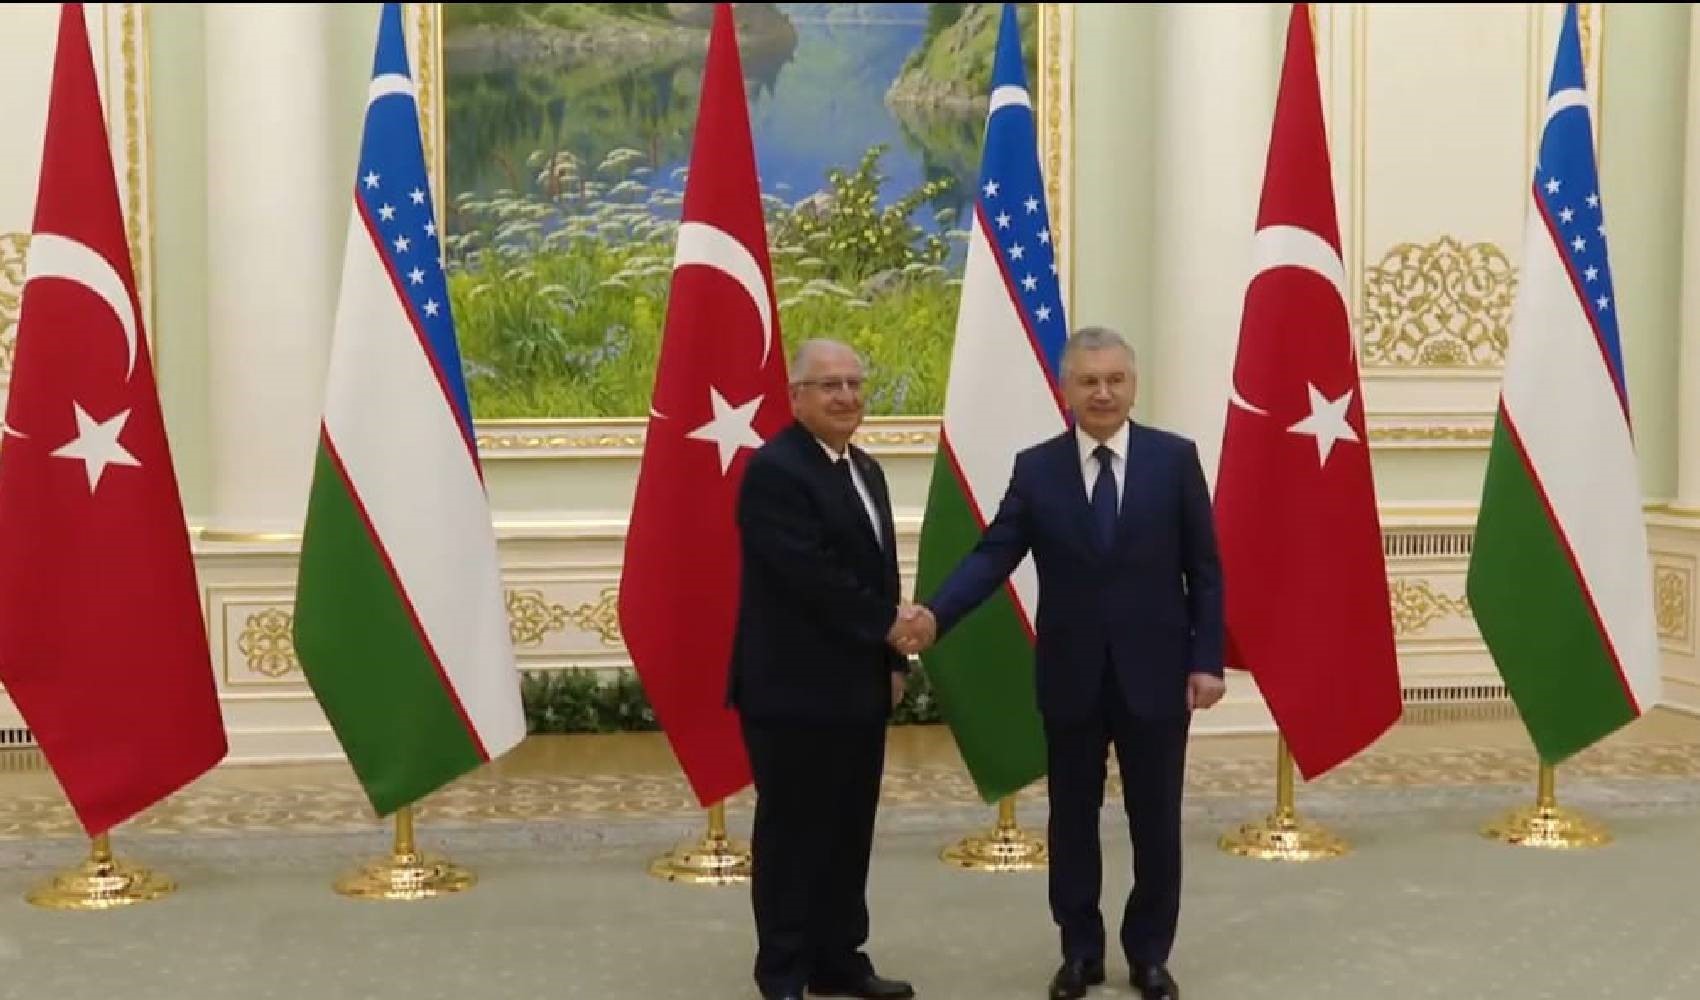 Milli Savunma Bakanı Yaşar Güler, Özbekistan ziyaretinde konuştu